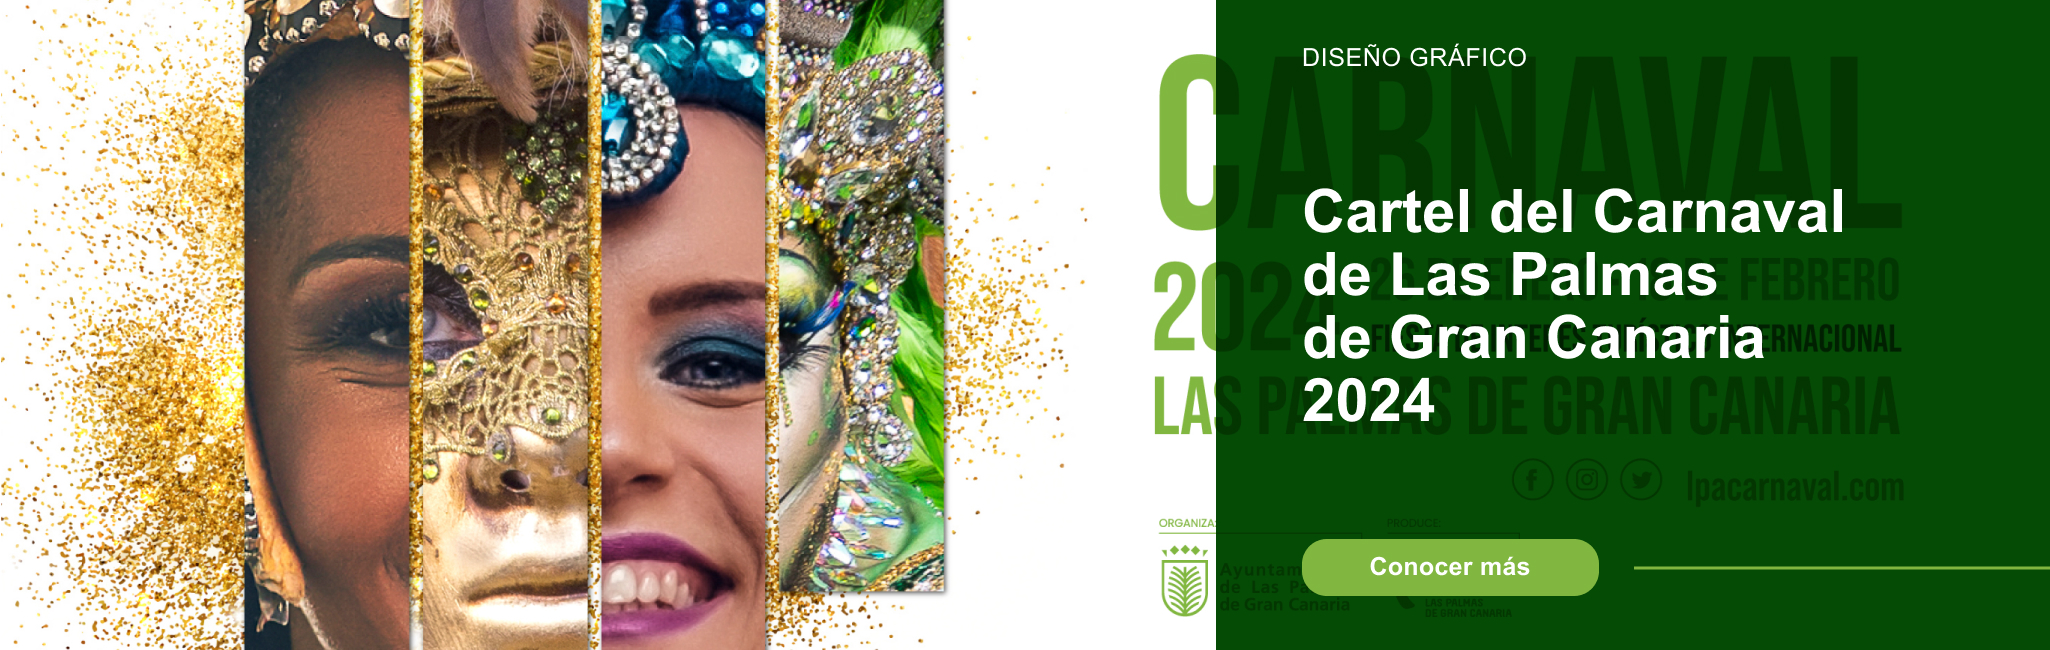 Cartel del Carnaval de Las Palmas de Gran Canaria 2024